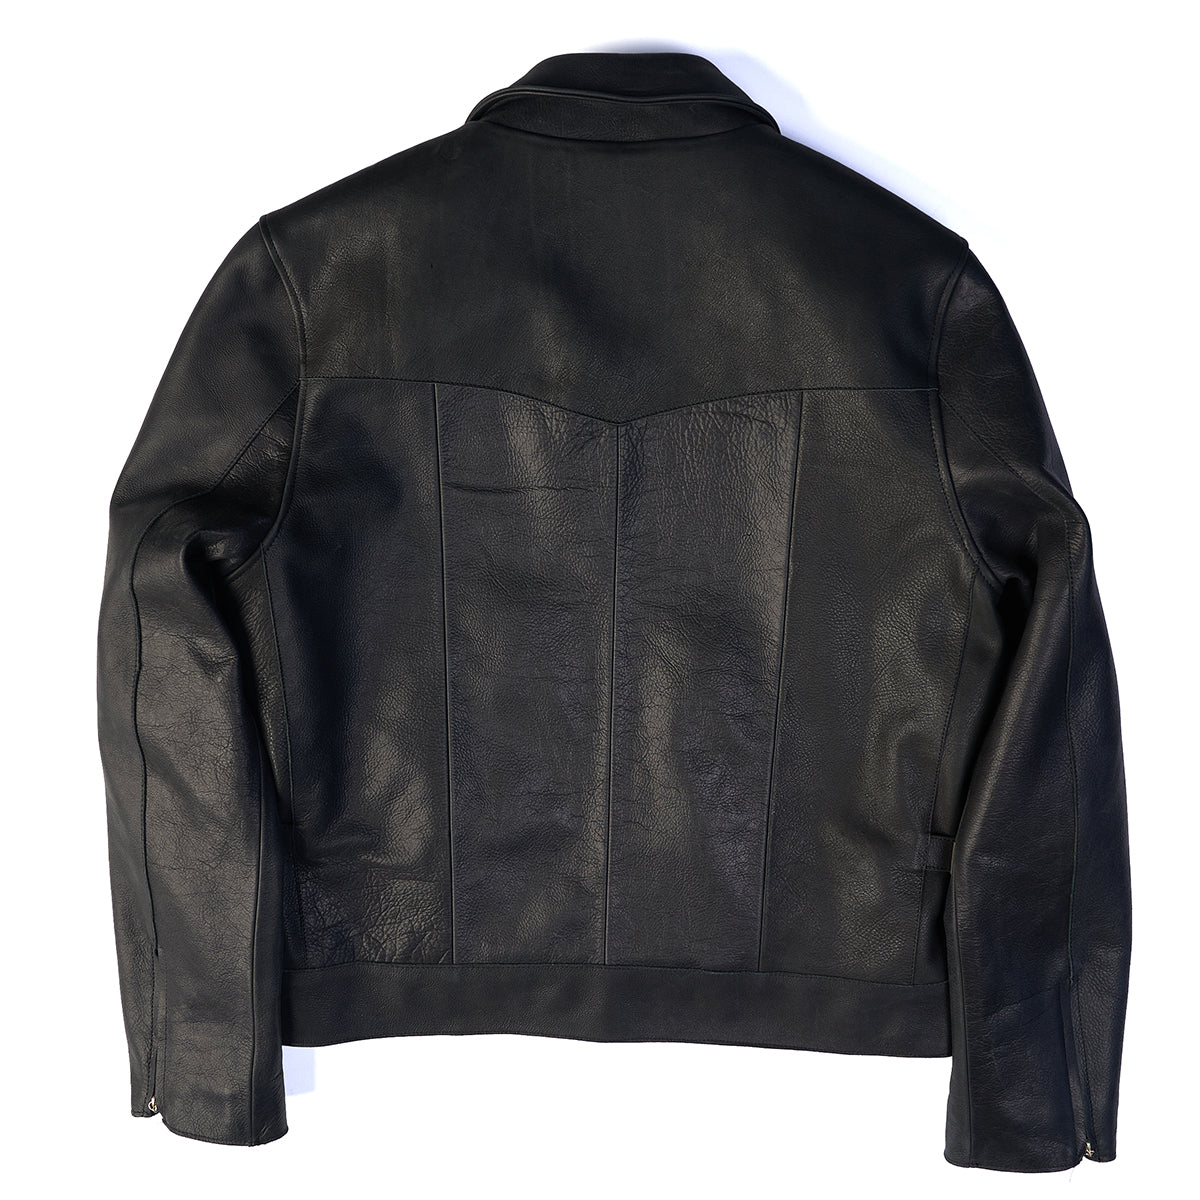 Garrison Jacket No. 89